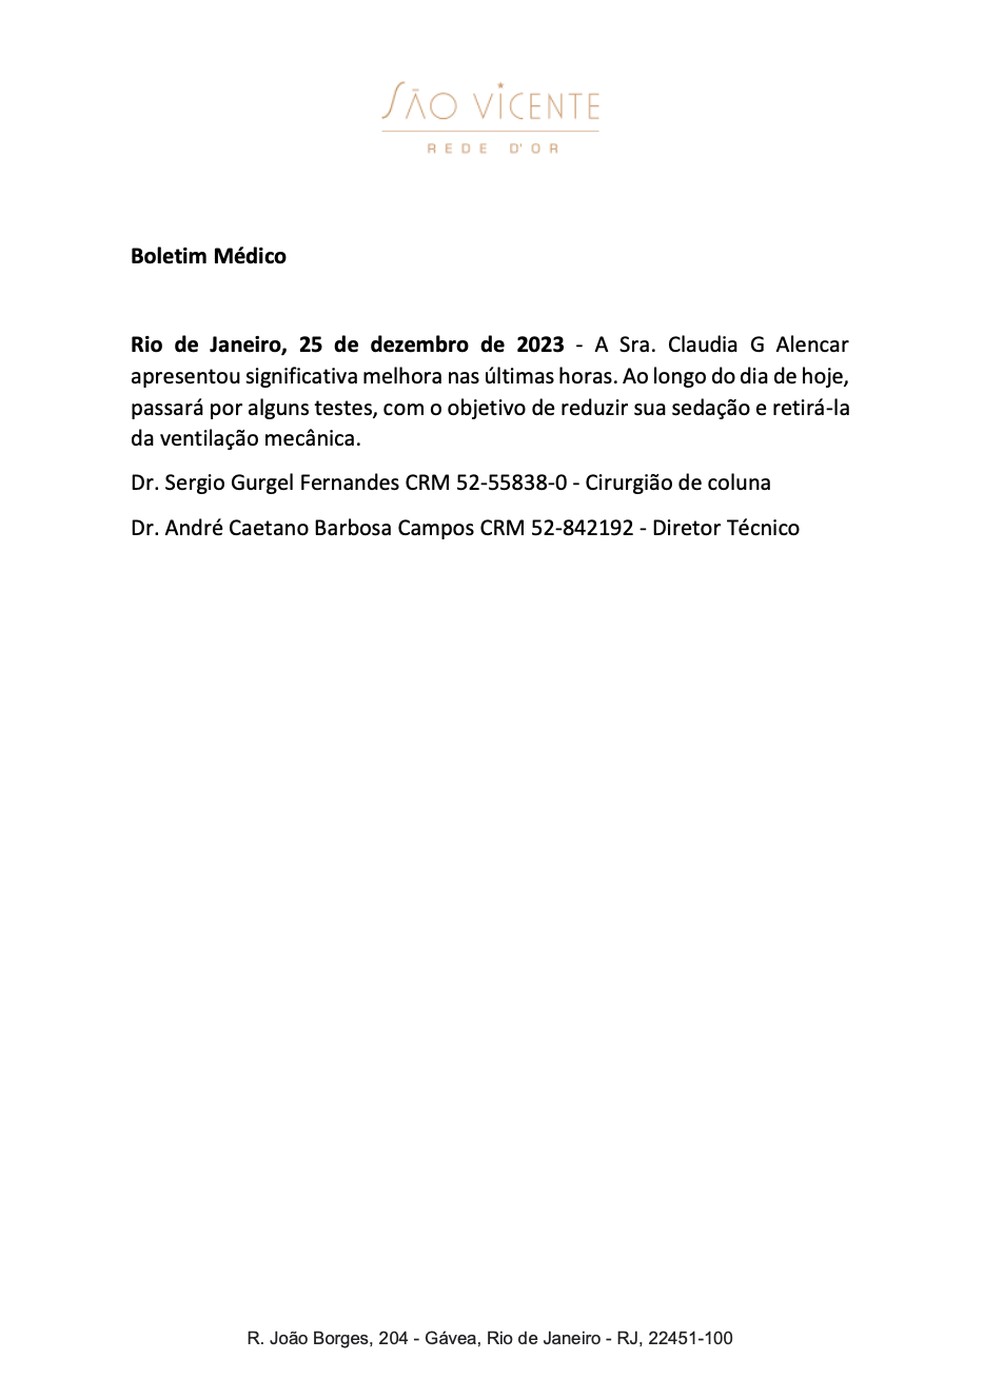 Boletim médico de Claudia Alencar (25.12.2023) — Foto: Divulgação